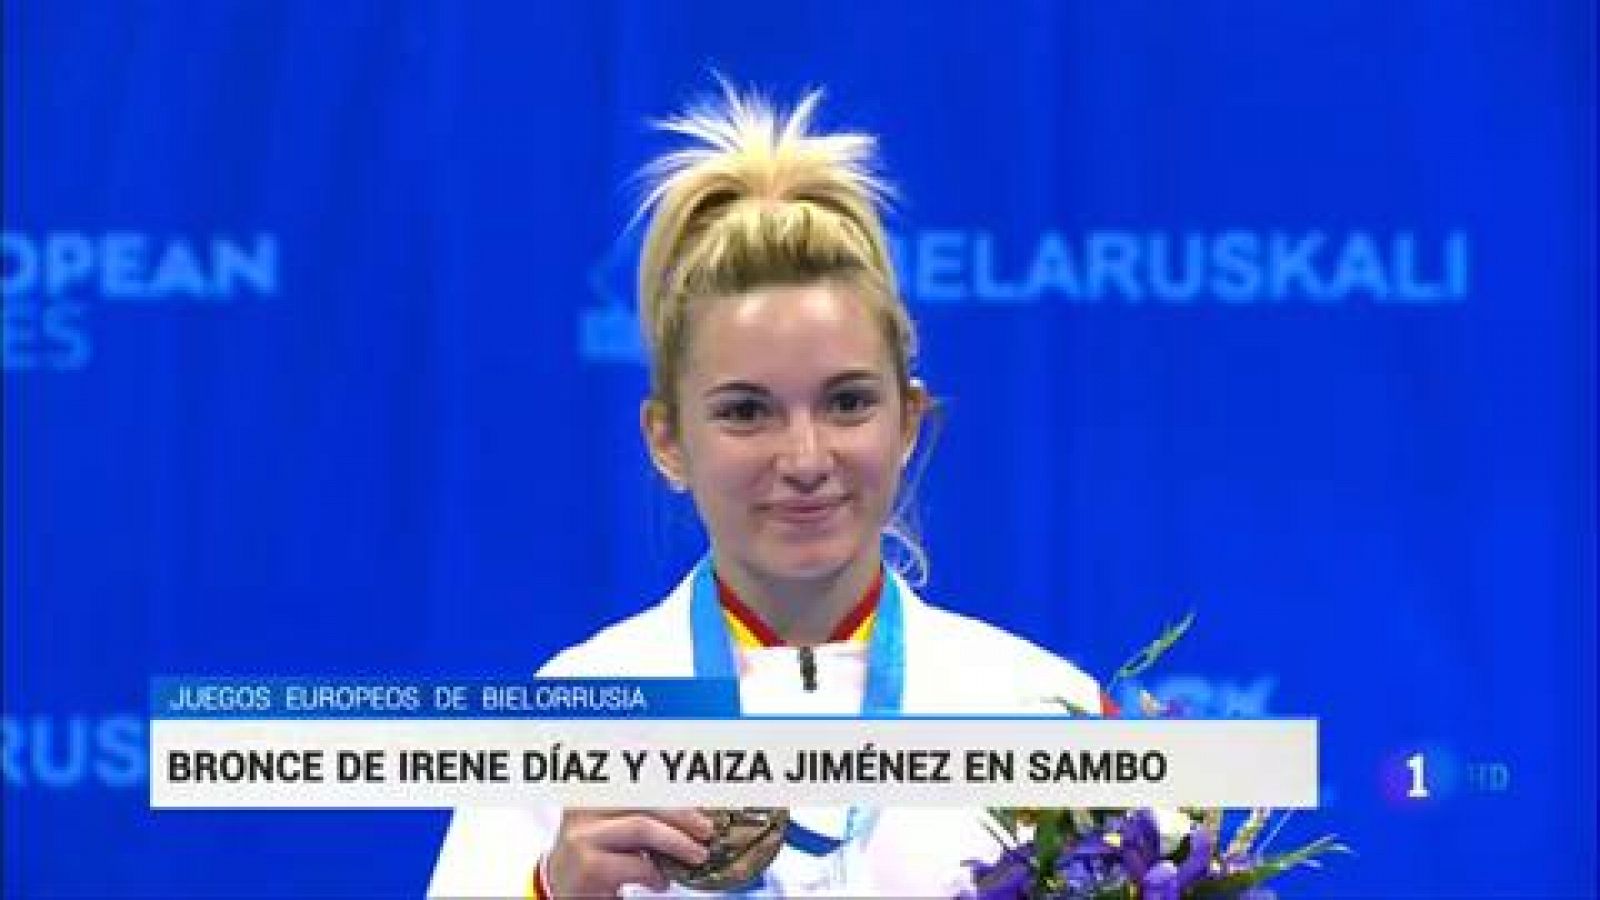 Juegos Europeos: Irene Díaz y Yaiza Jiménez ganan sendos bronces en sambo - rtve.es